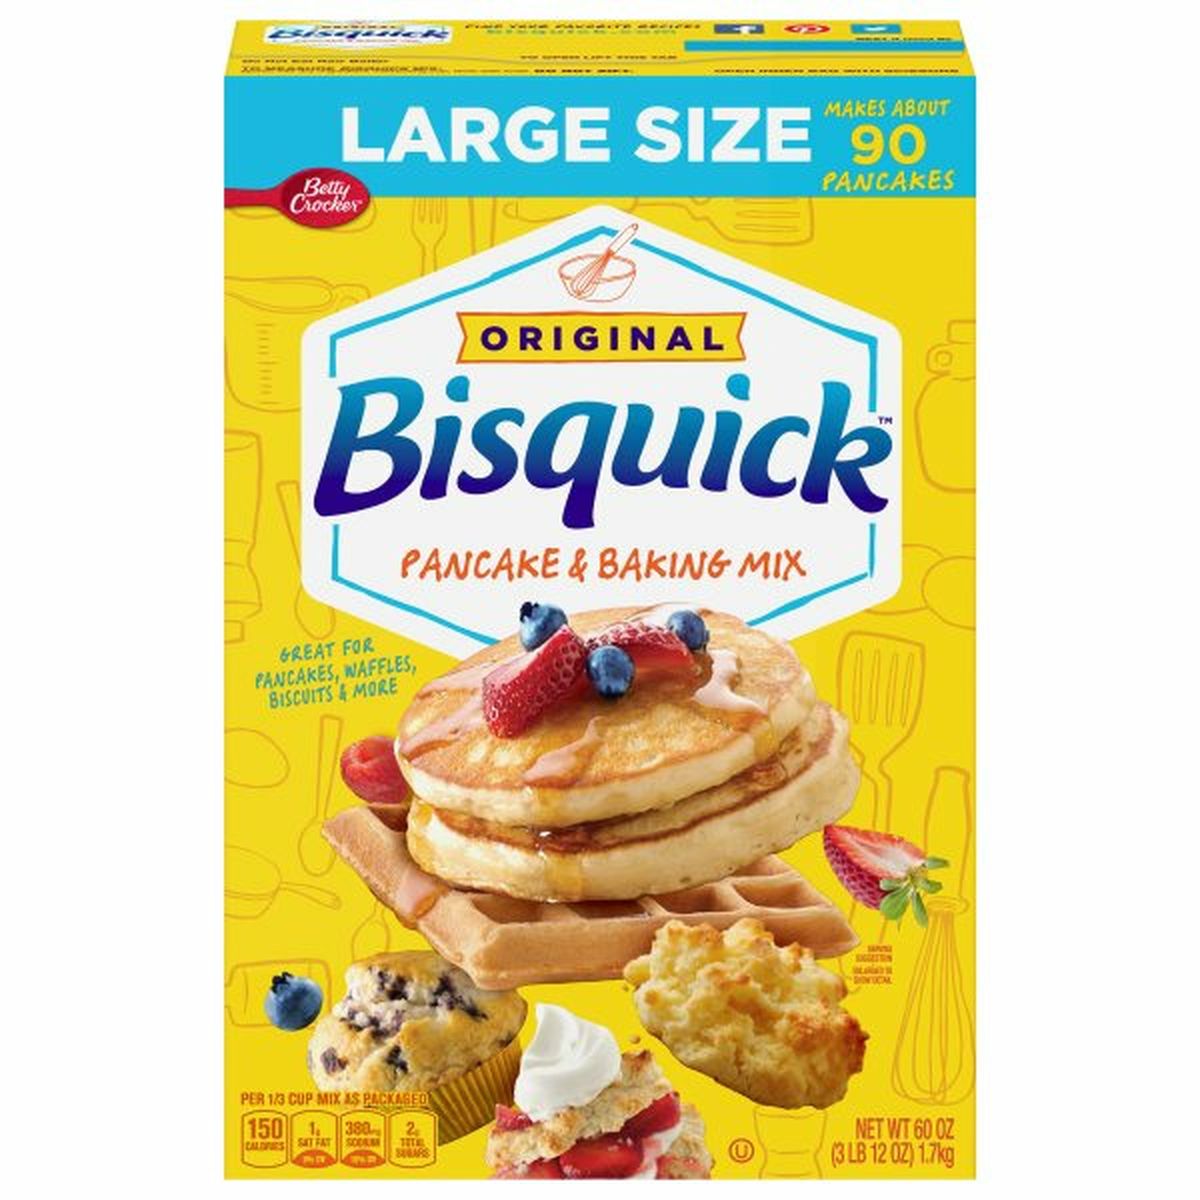 Calories in Bisquick Pancake & Baking Mix, Original, Large Size